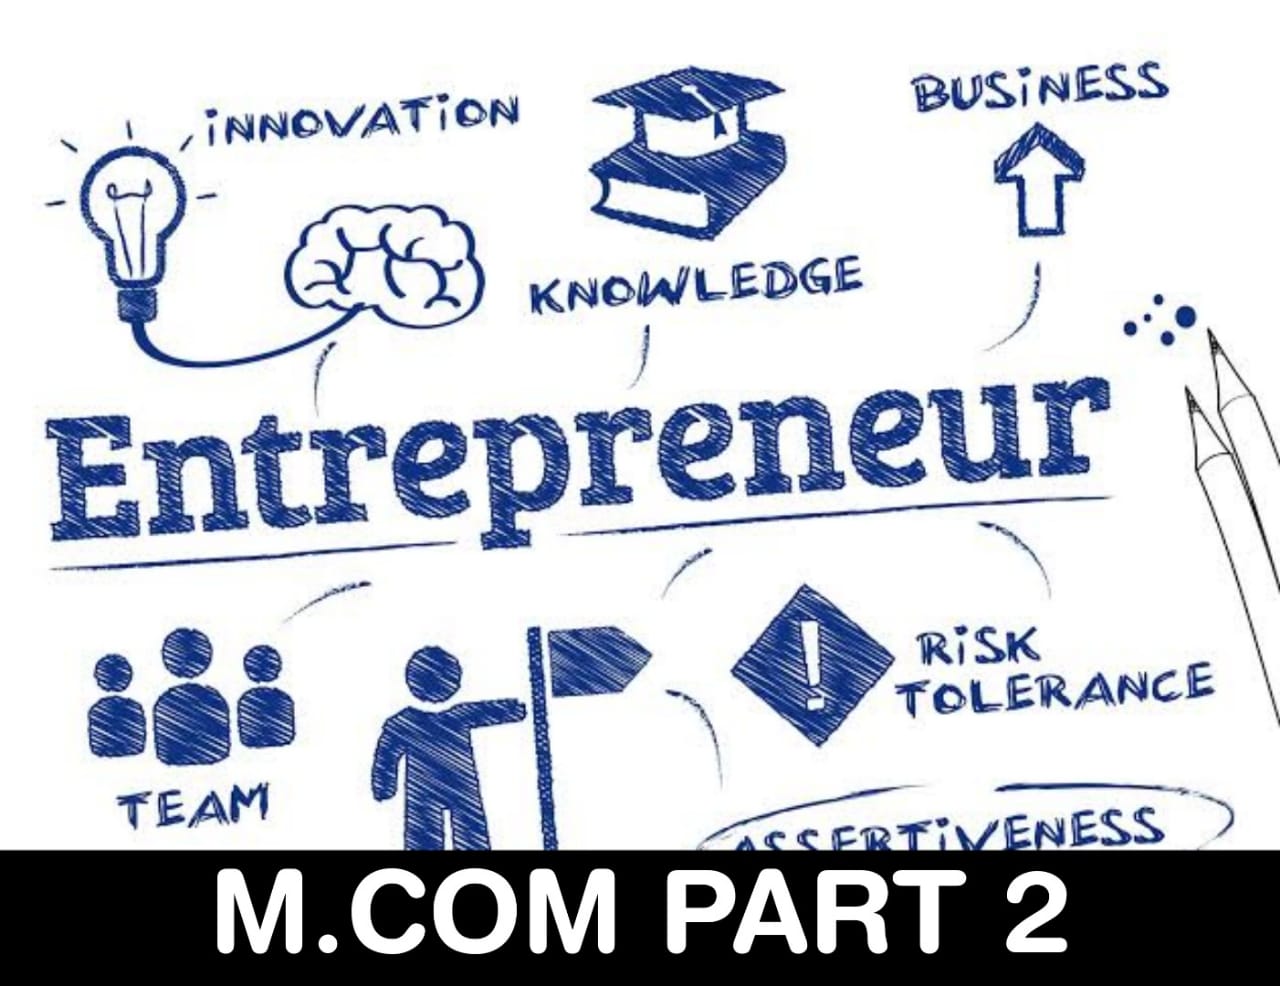 Entrepreneurship Management M.COM PART 2 Multiple Choice Questions | M.com Part 2 MCQ PDF